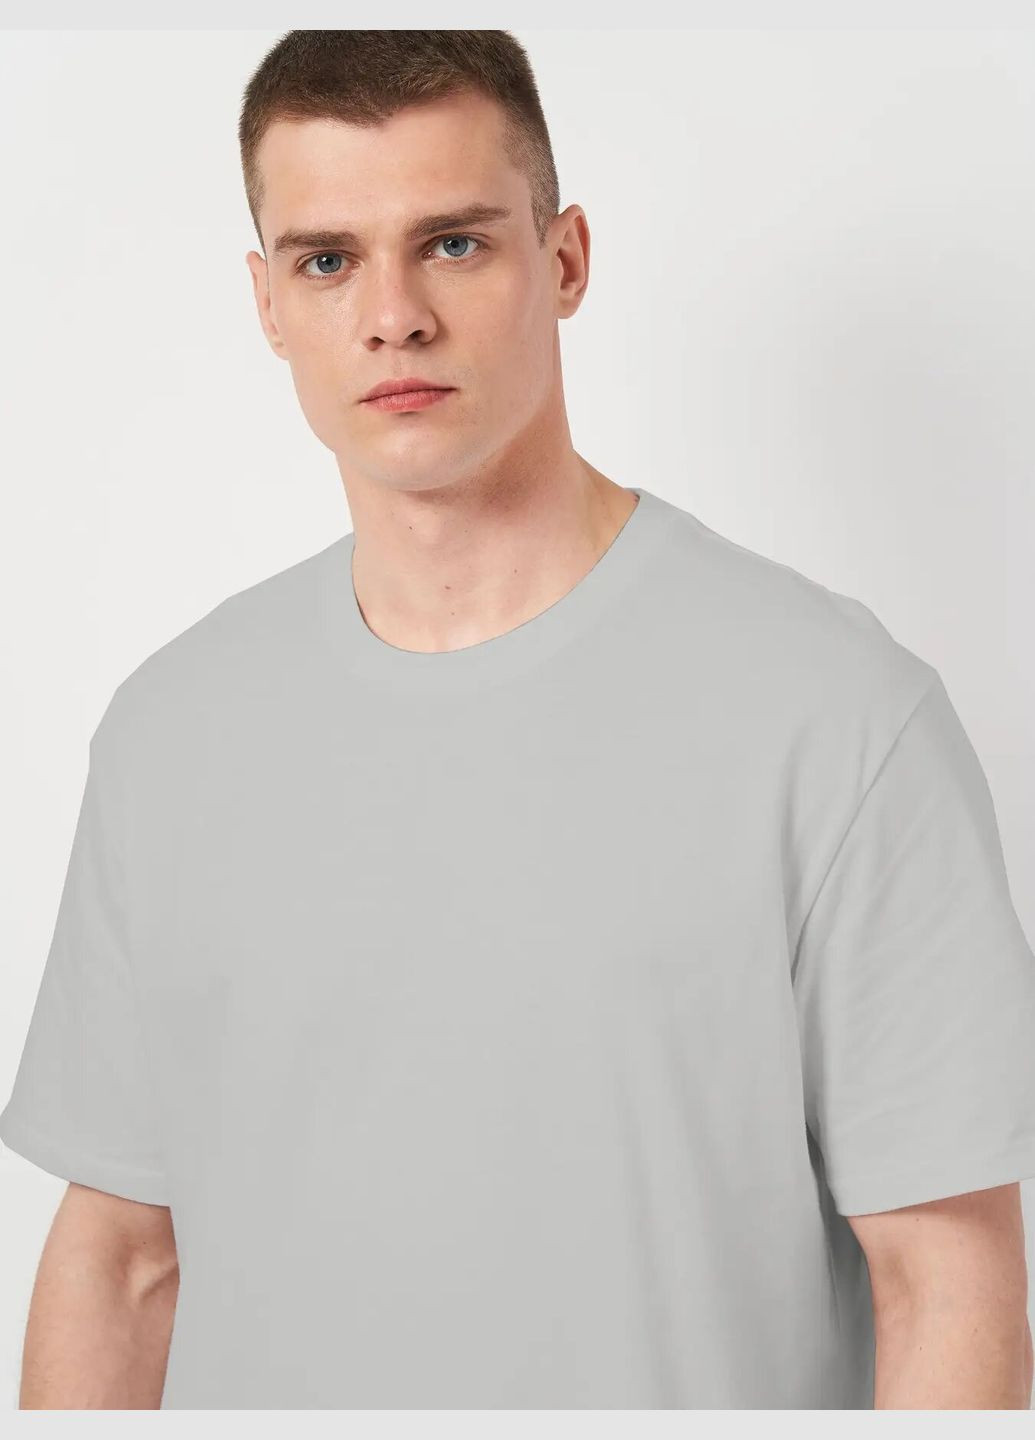 Світло-сіра футболка чоловіча великих розмірів з коротким рукавом Роза